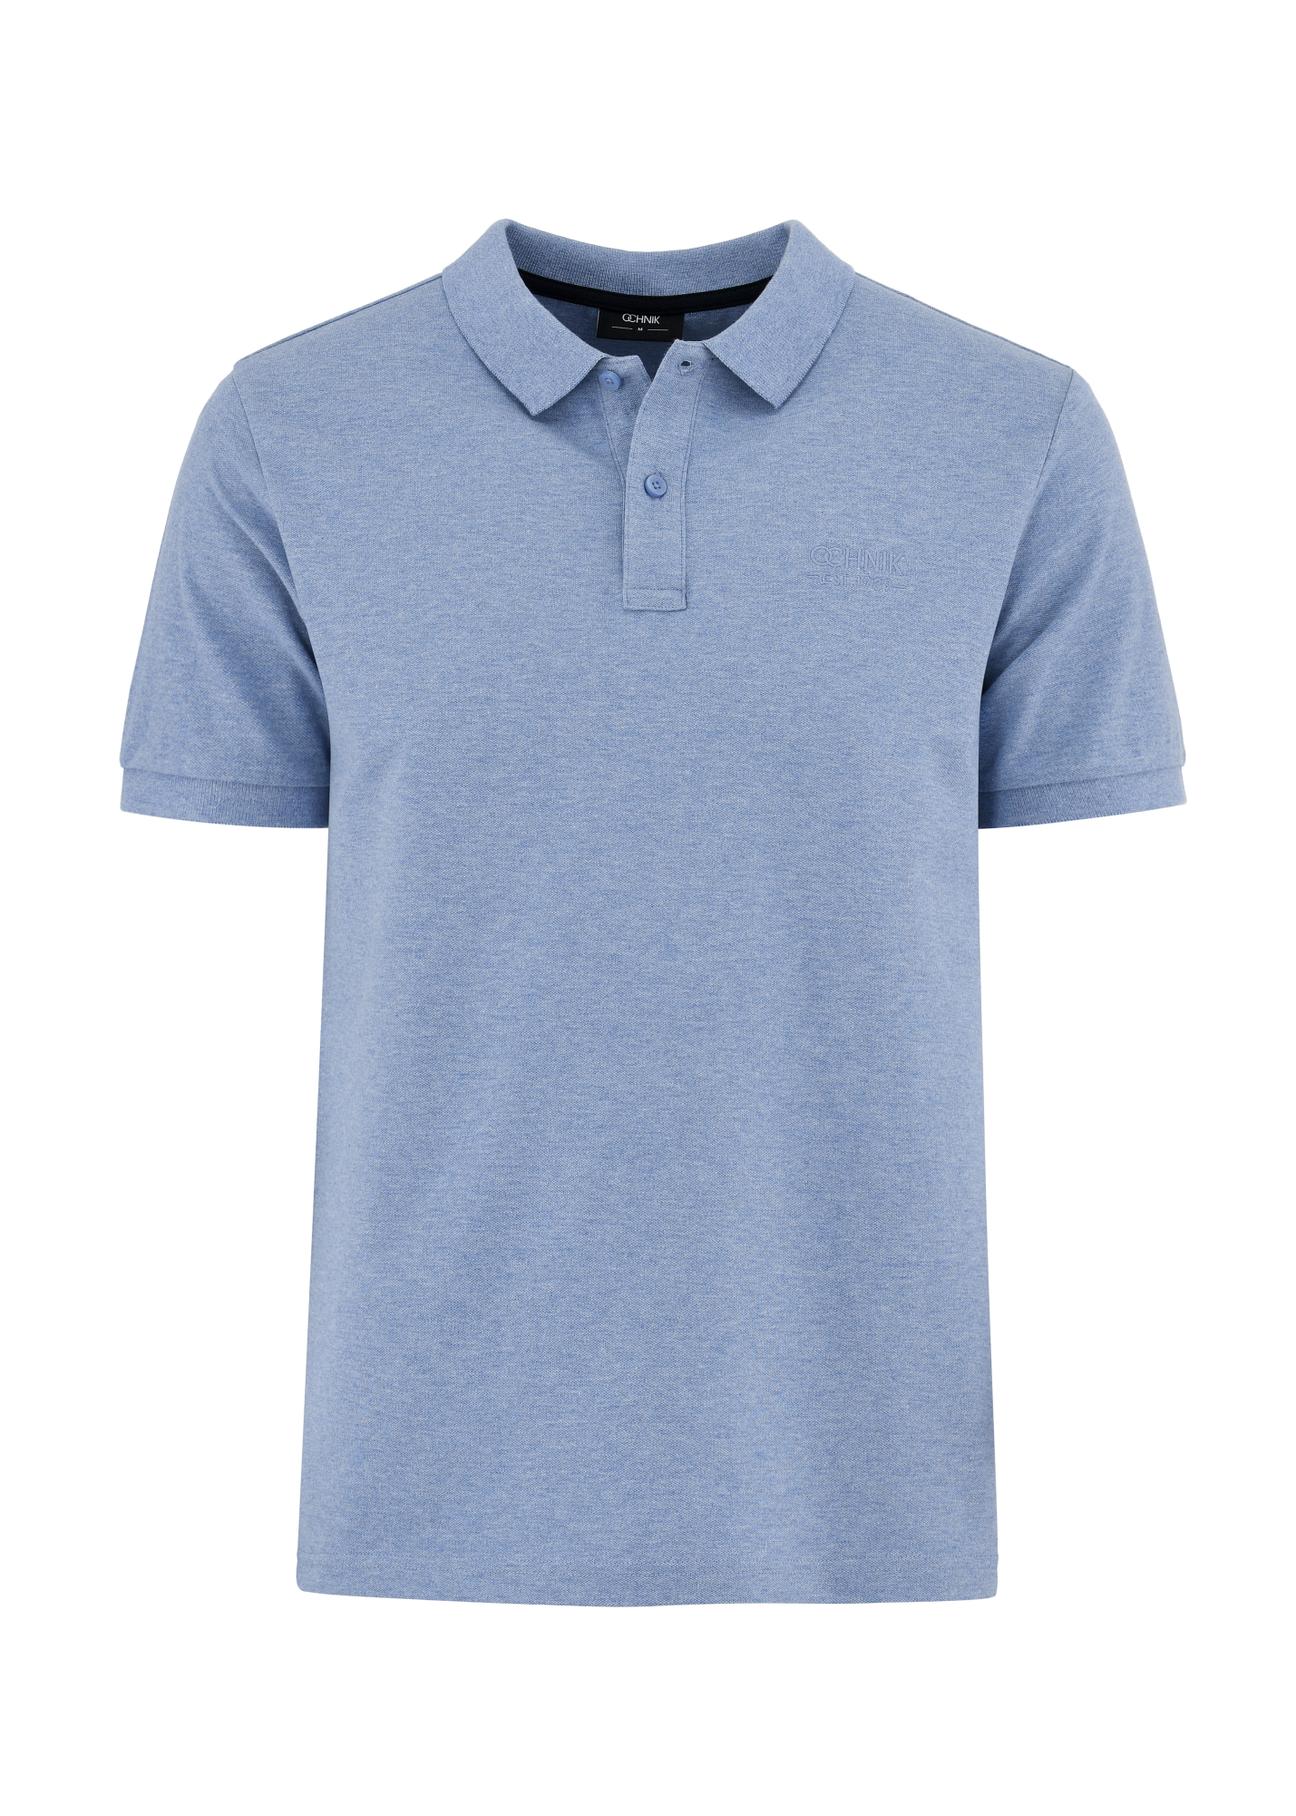 Błękitna koszulka polo męska POLMT-0070-60(W24)